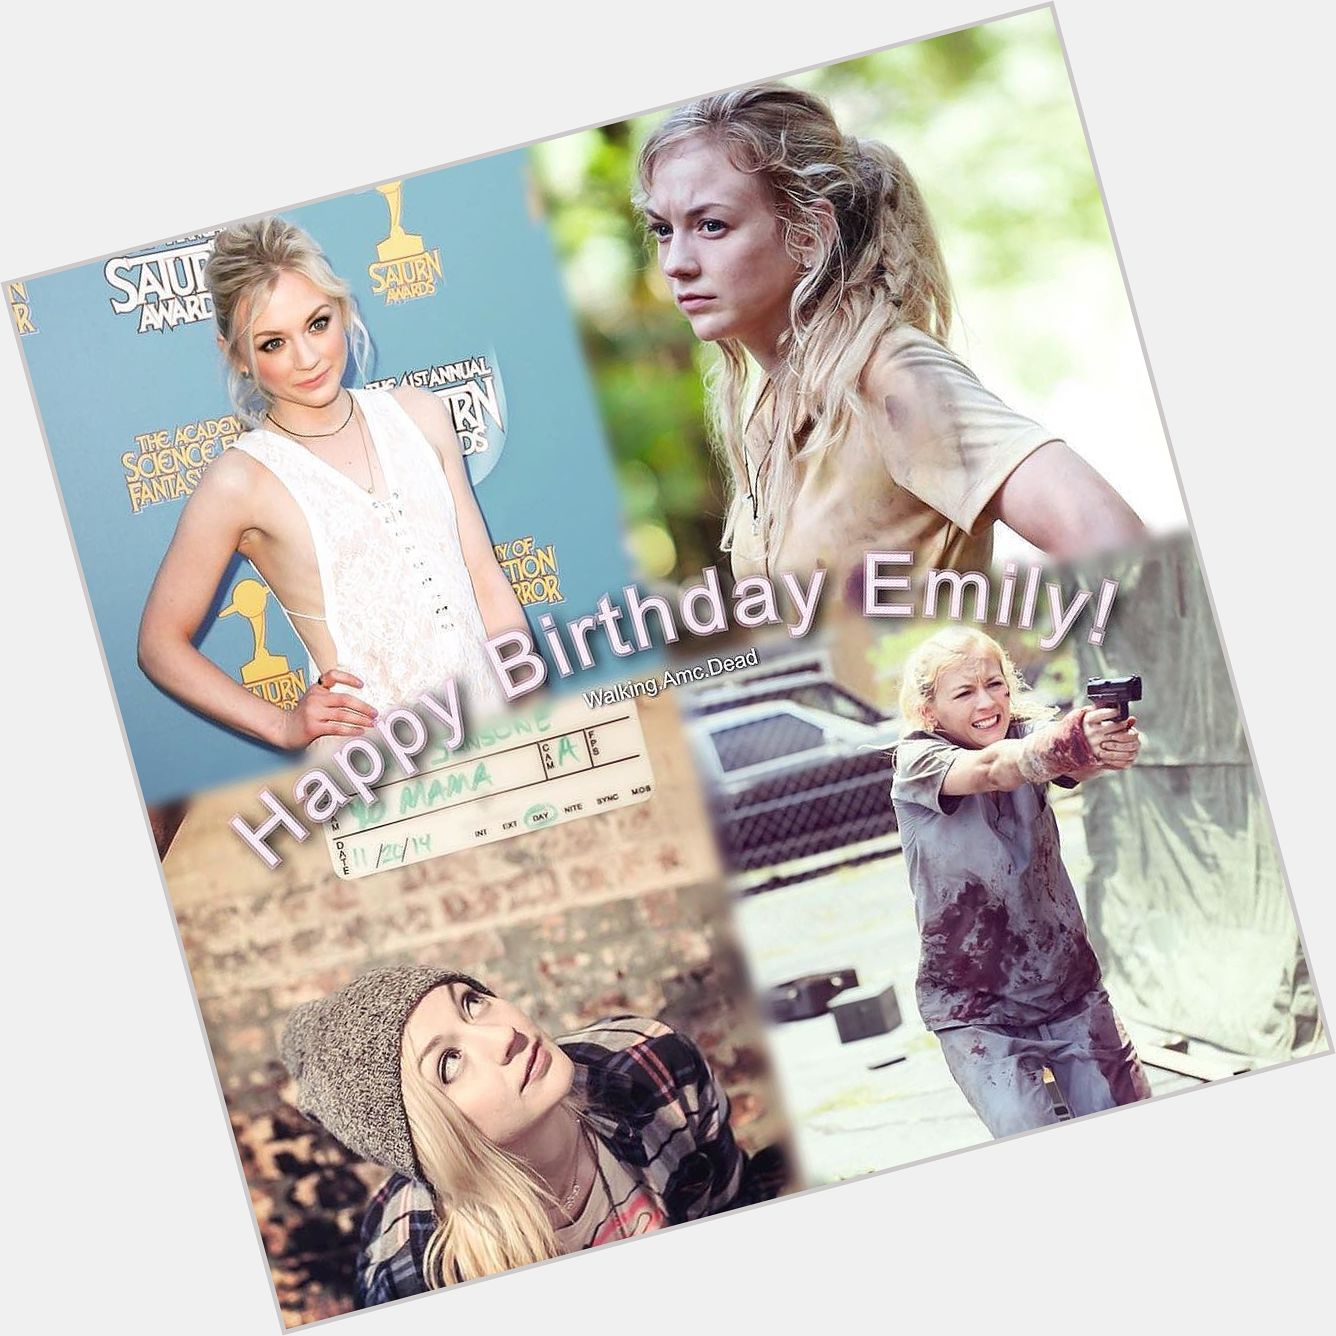 Happy Birthday Emily Kinney! 